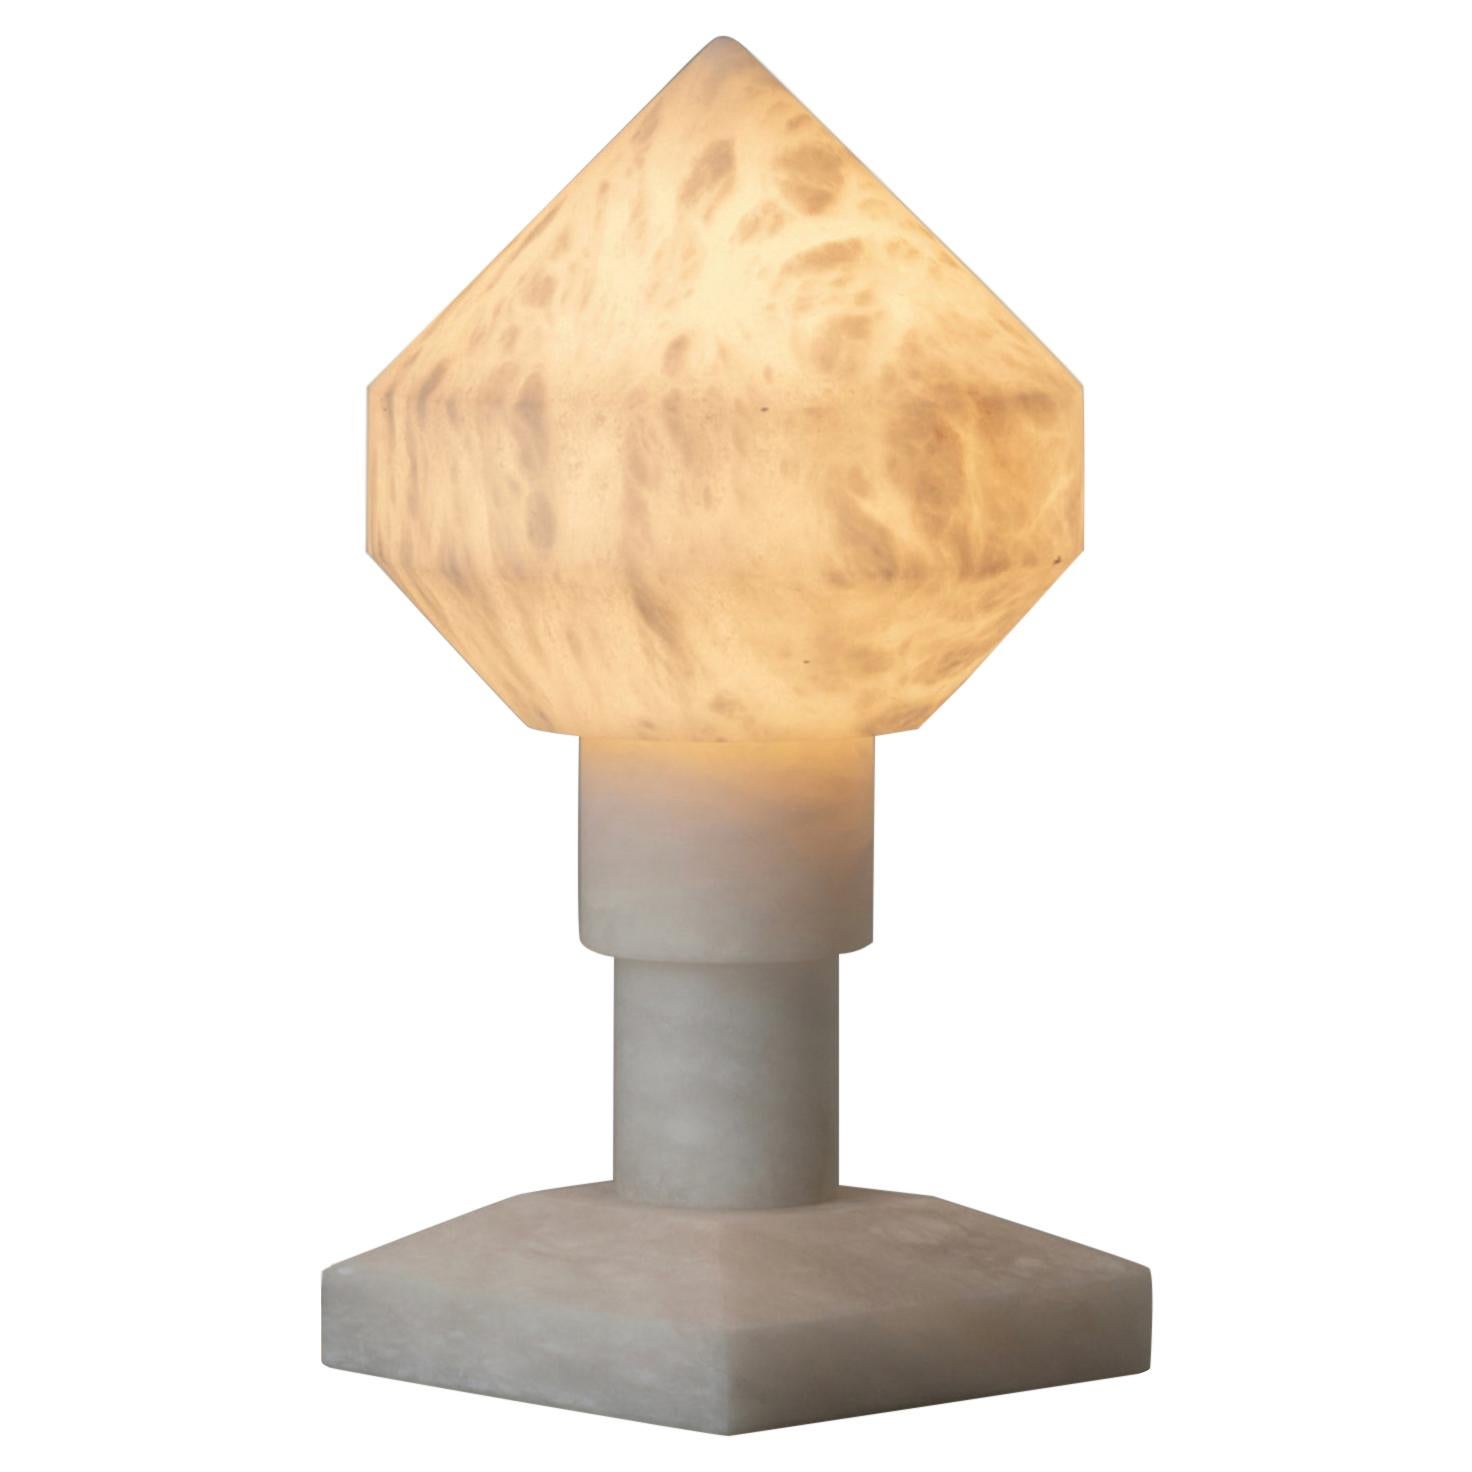 Zeleste Table Lamp by Àngel Jové and Santiago Roqueta for Santa & Cole